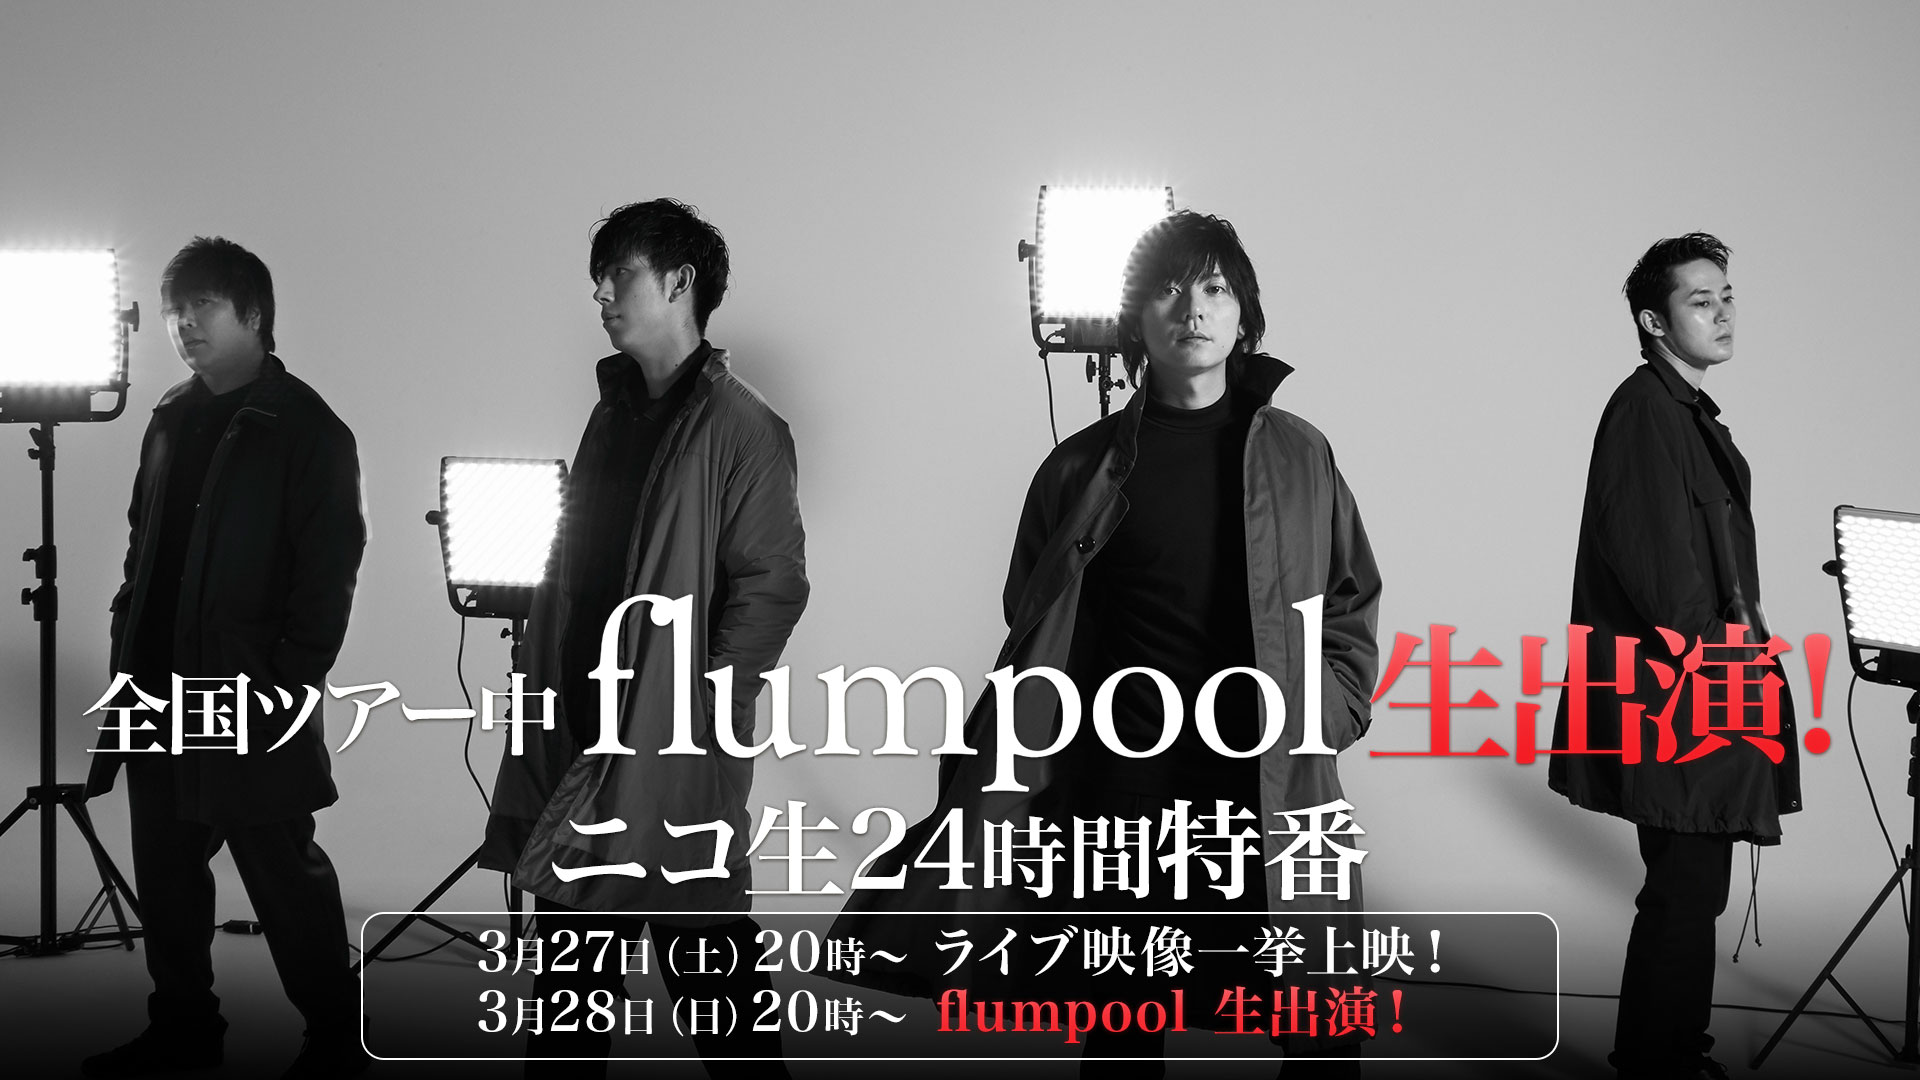 Flumpool 3 28生出演決定 ニコ生24時間特番ライブ Mv一挙上映番組を発表 株式会社ドワンゴ ニコニコ事業本部のプレスリリース